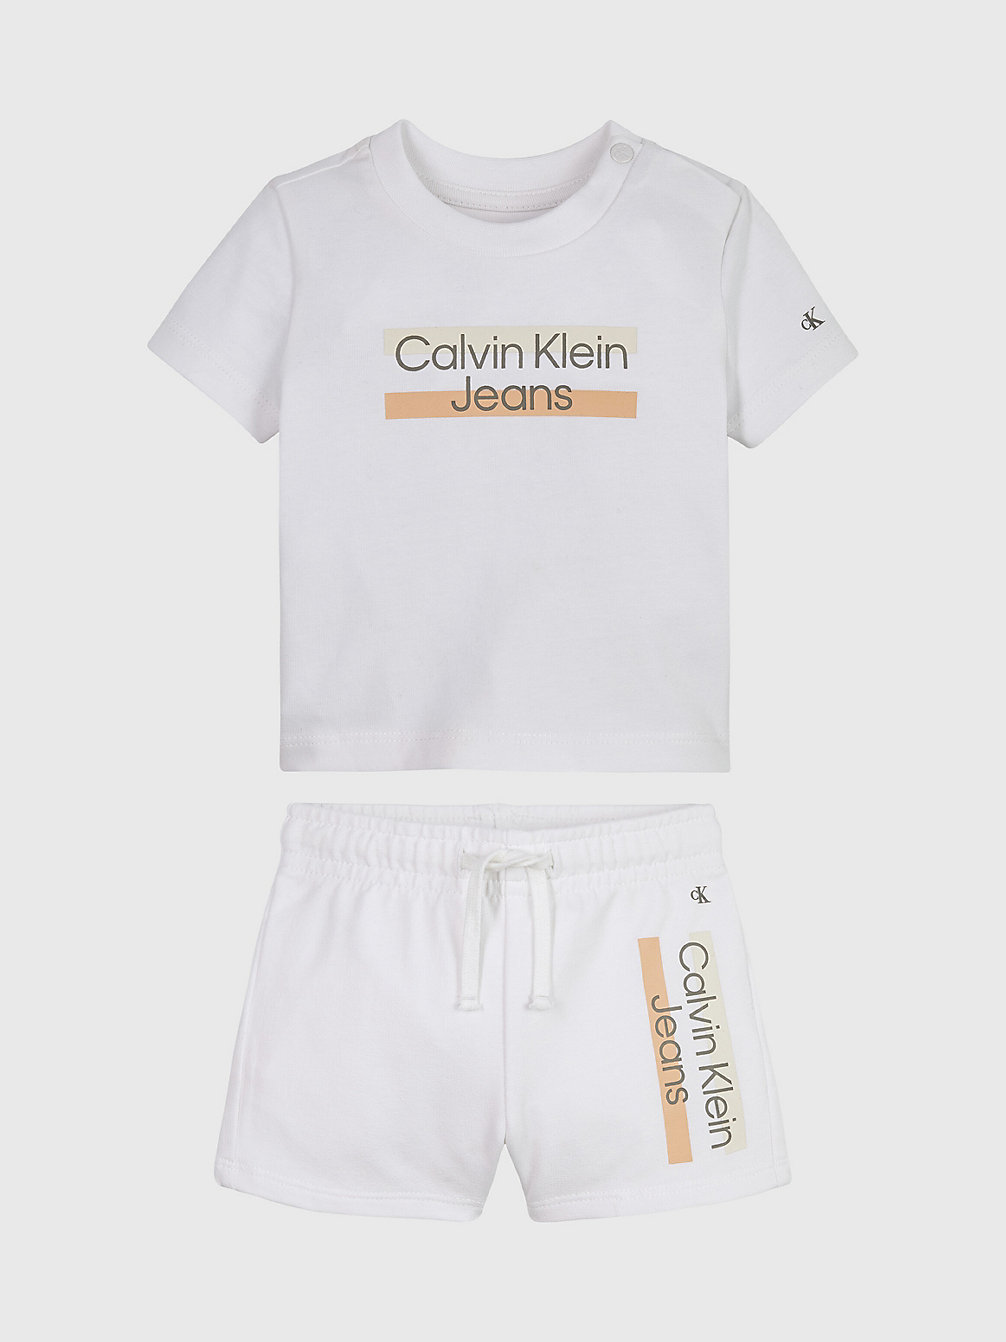 BRIGHT WHITE Newborn T-Shirt And Shorts Set undefined newborn Calvin Klein